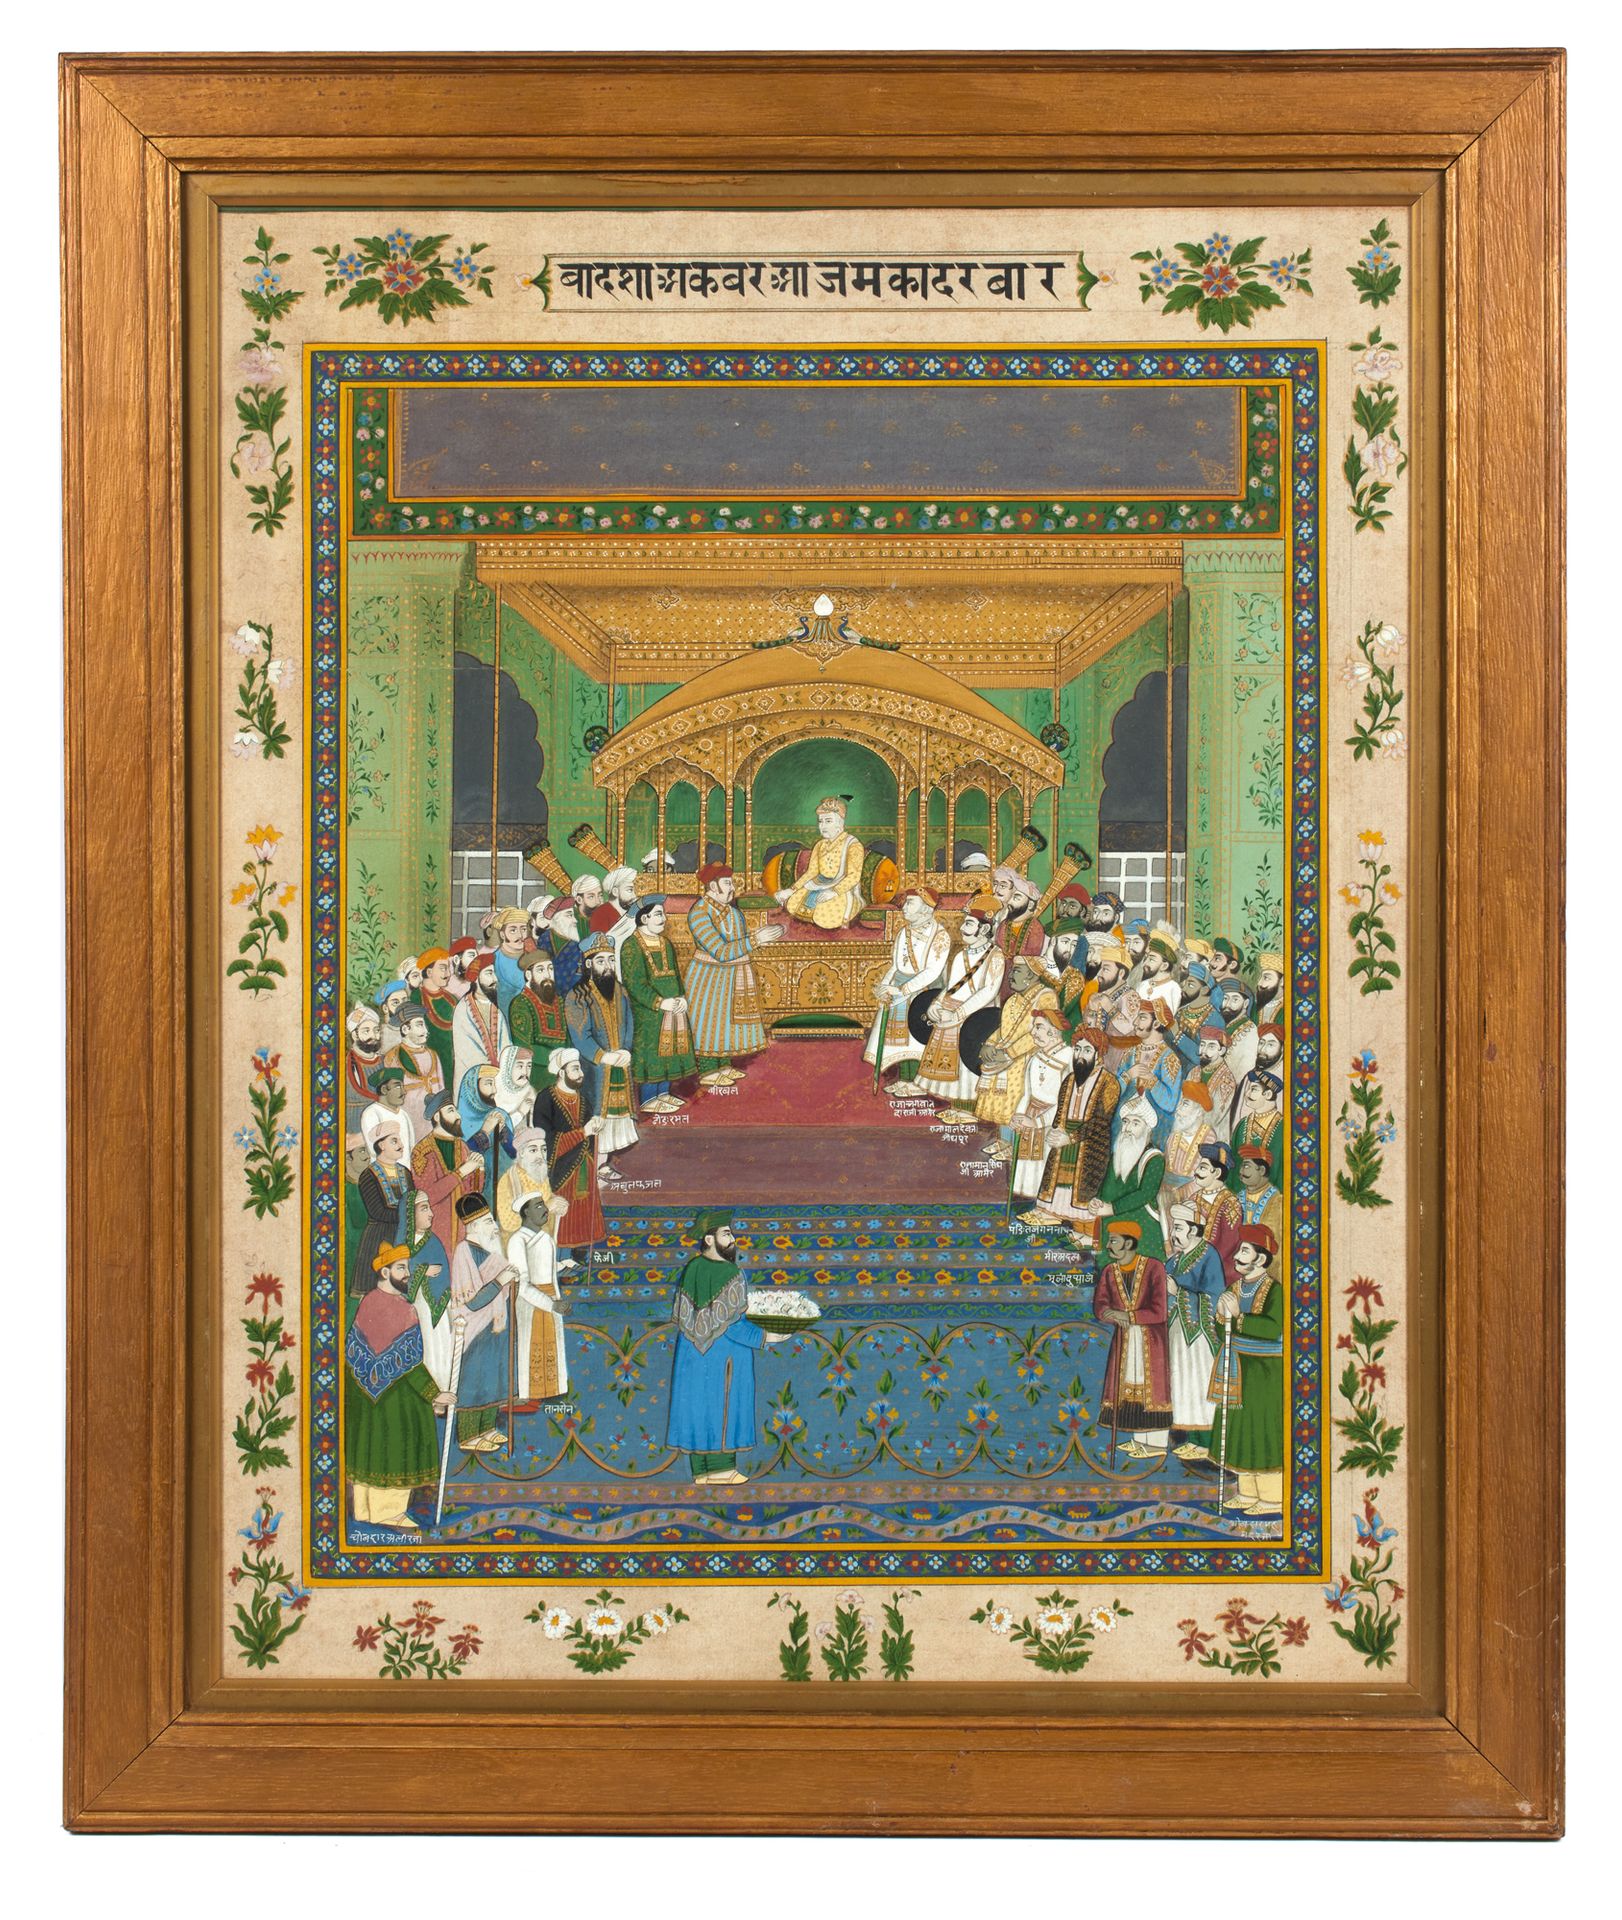 La cour de l'empereur Akbar 
La corte del emperador Akbar




India, Delhi, alre&hellip;